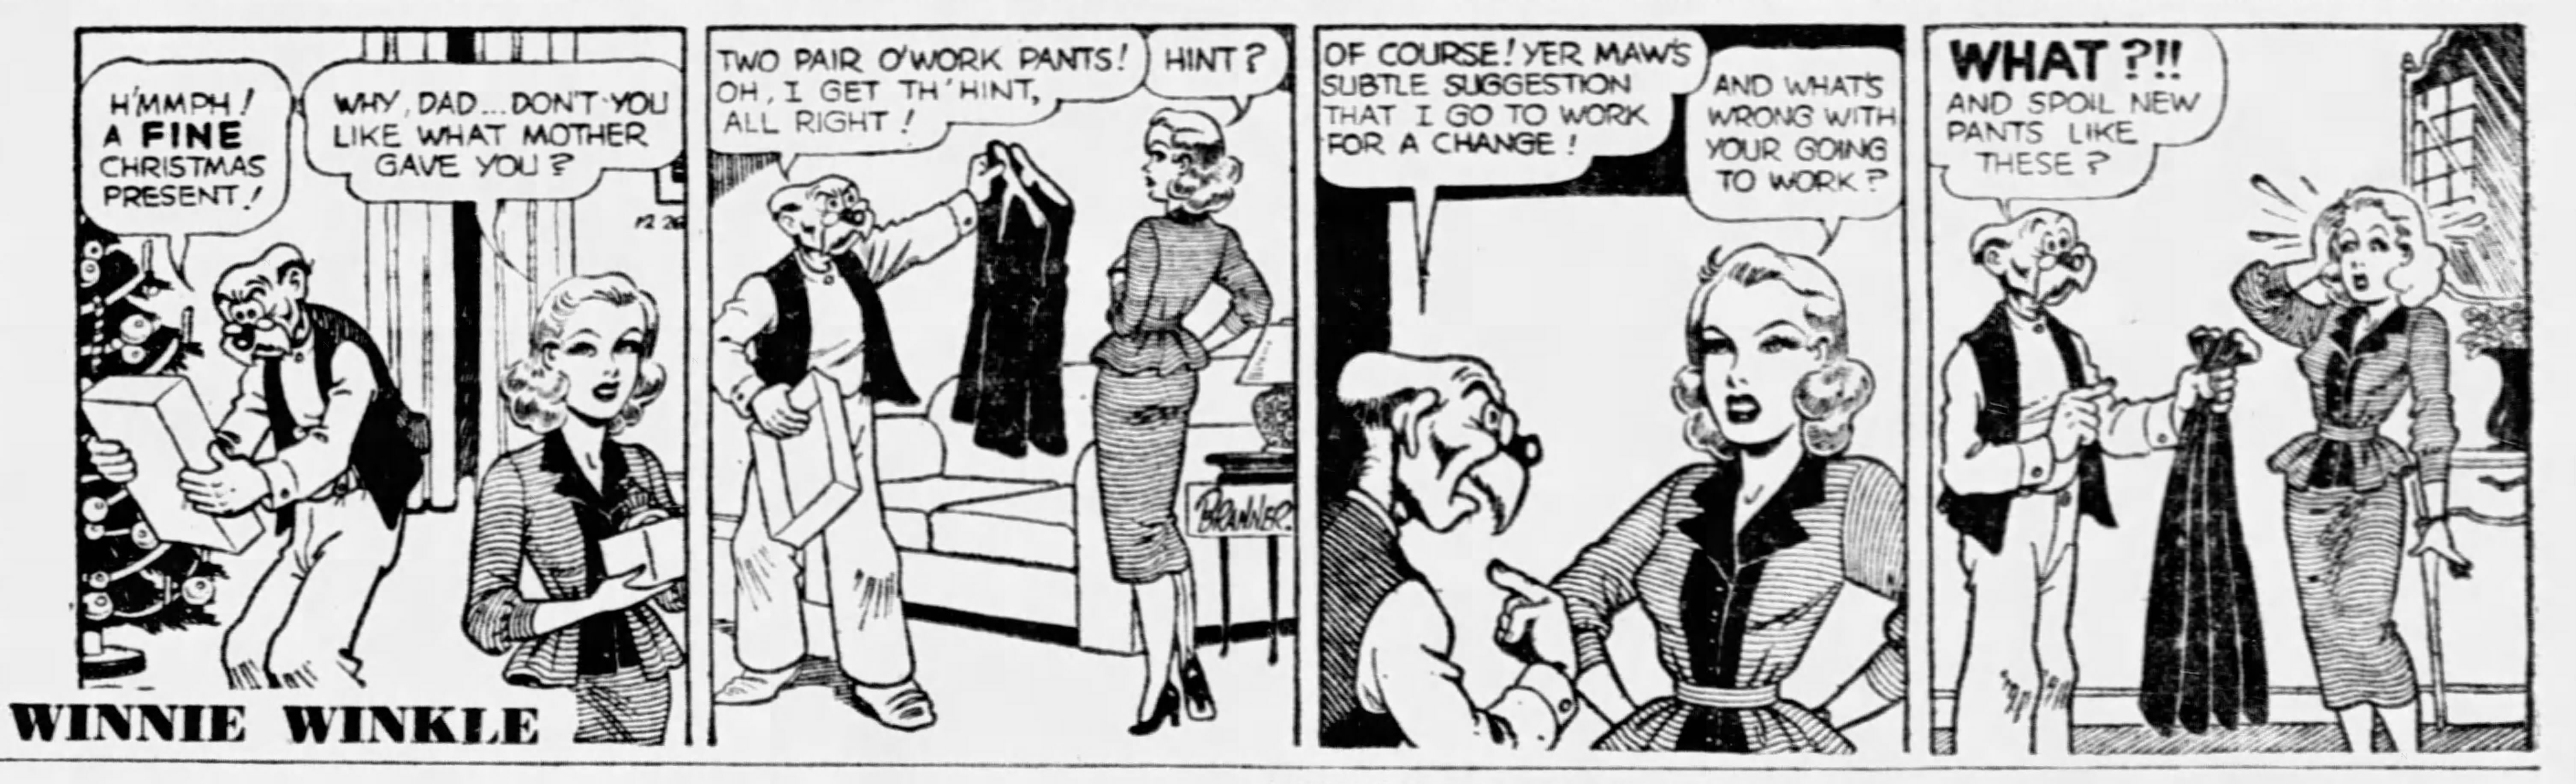 Winnie Winkle, December 26, 1952